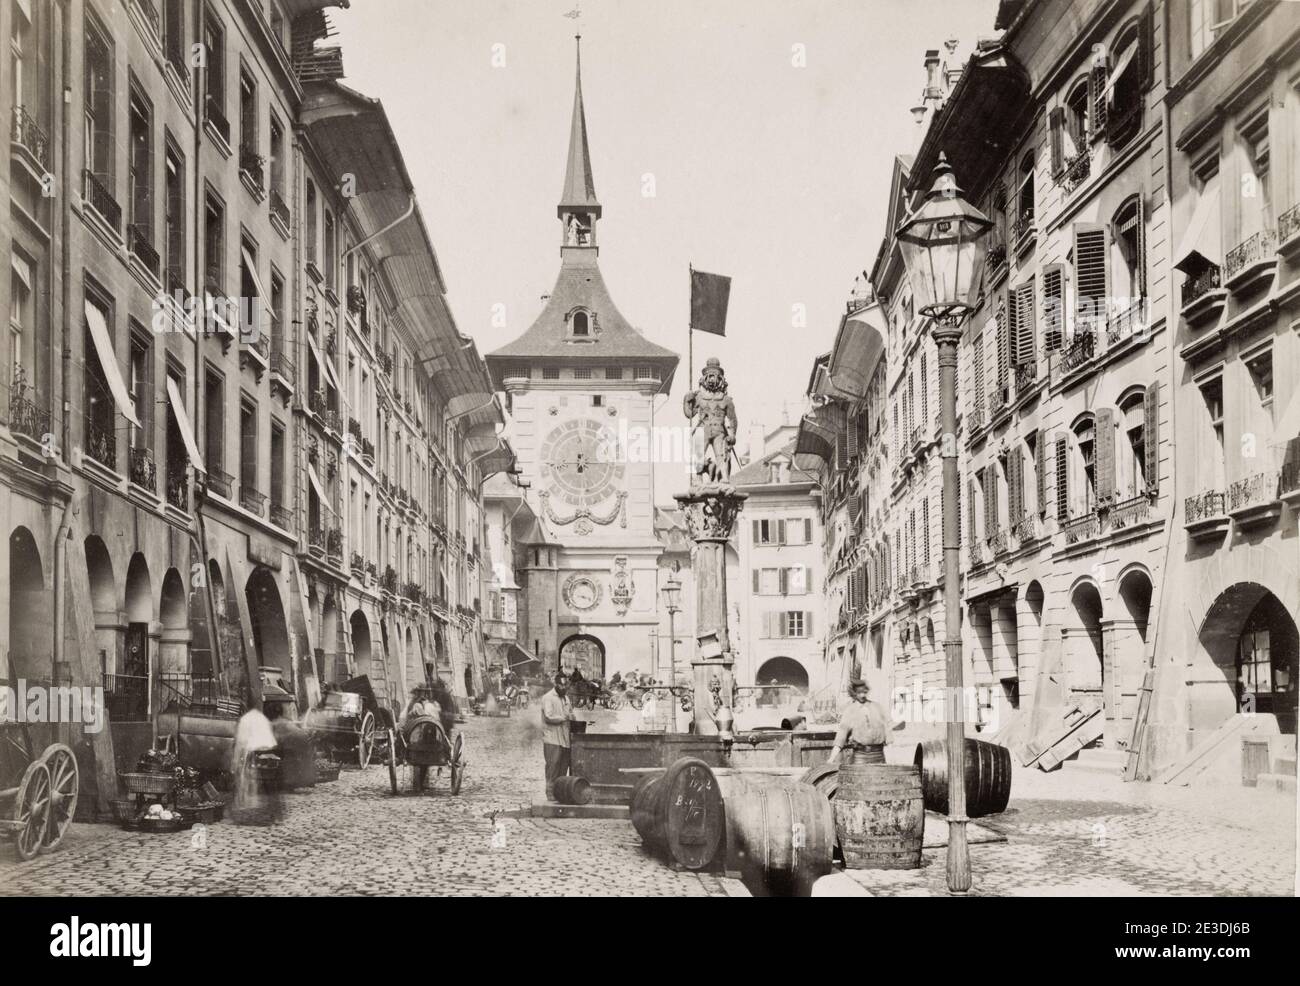 Vintage 19. Jahrhundert Foto: Die Zytglogge ist ein Wahrzeichen mittelalterlichen Turm in Bern, Schweiz. Erbaut im frühen 13. Jahrhundert, hat es der Stadt als Wachturm, Gefängnis, Uhrturm, Zentrum des städtischen Lebens und Bürgerdenkmal gedient. Stockfoto